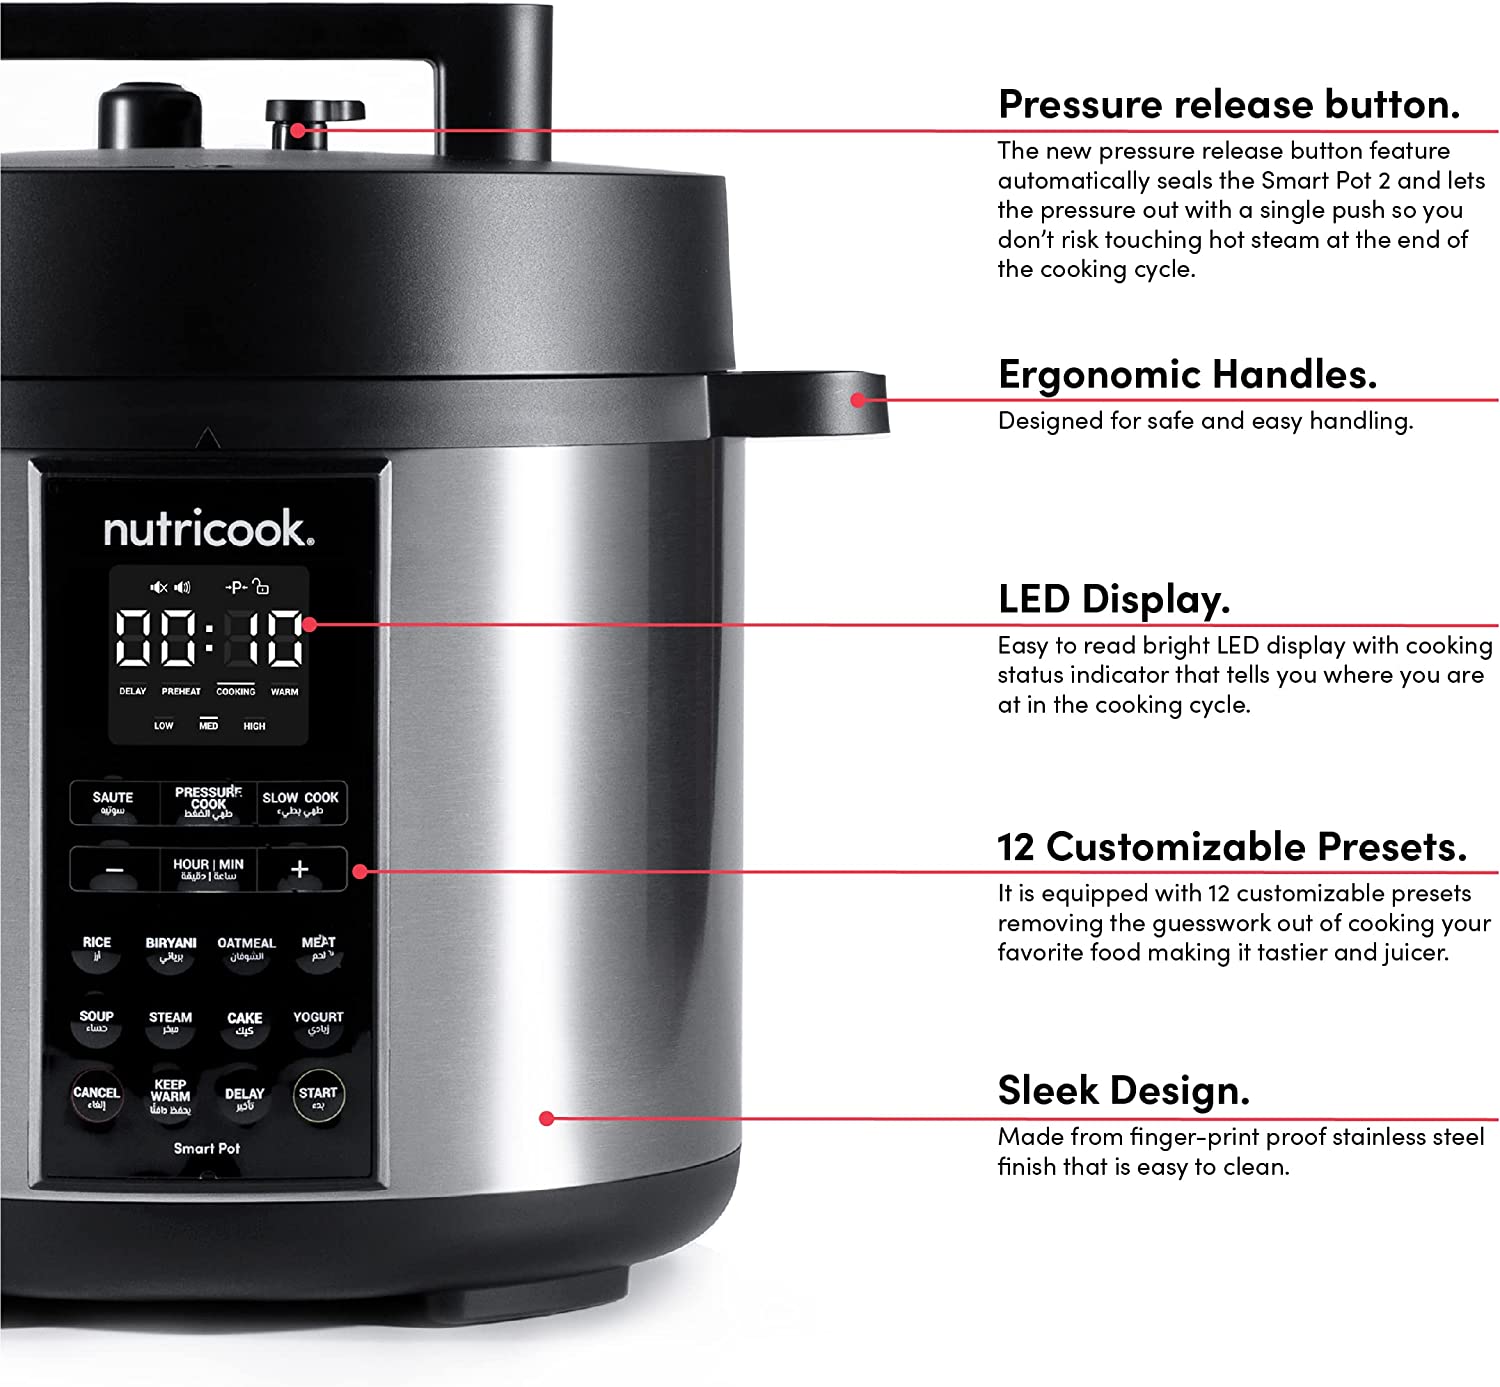 زودپز برقی نوتریکوک مدل Nutricook Smart Pot 2 1200 Watts 9 In 1 - ارسال ۱۰ الی ۱۵ روز کاری